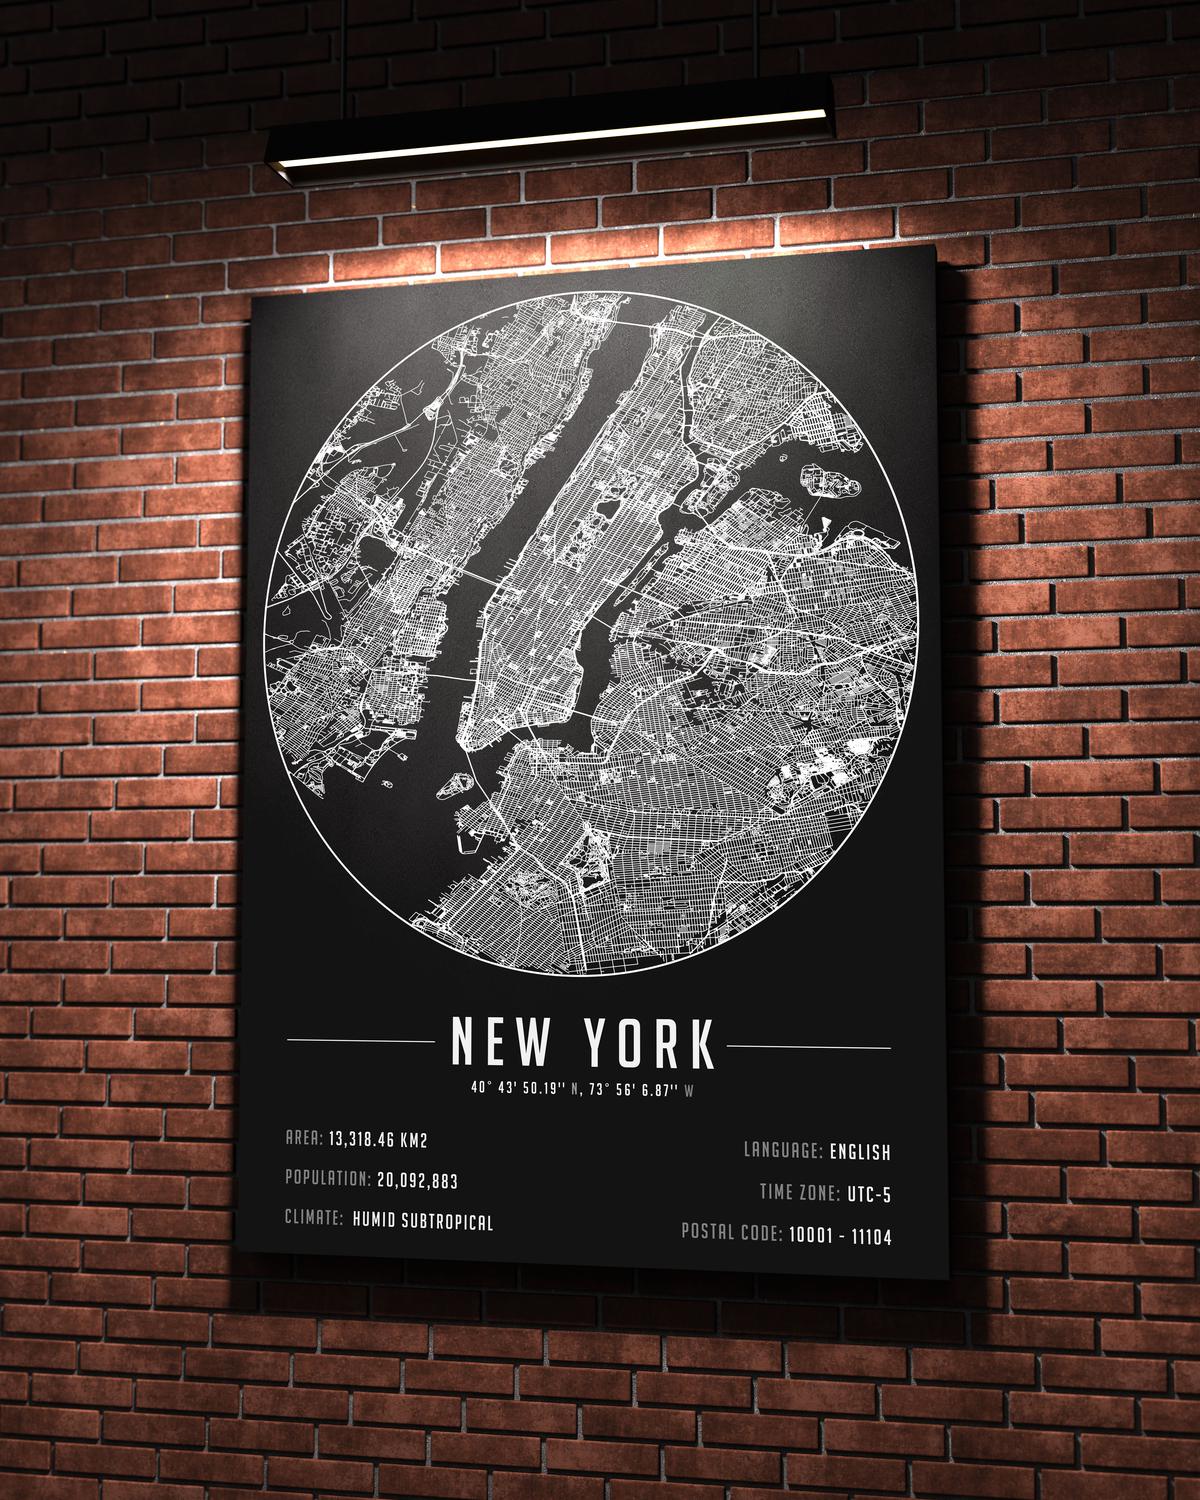 NewYork Şehir Haritası 50 x 70 cm Kanvas Tablo